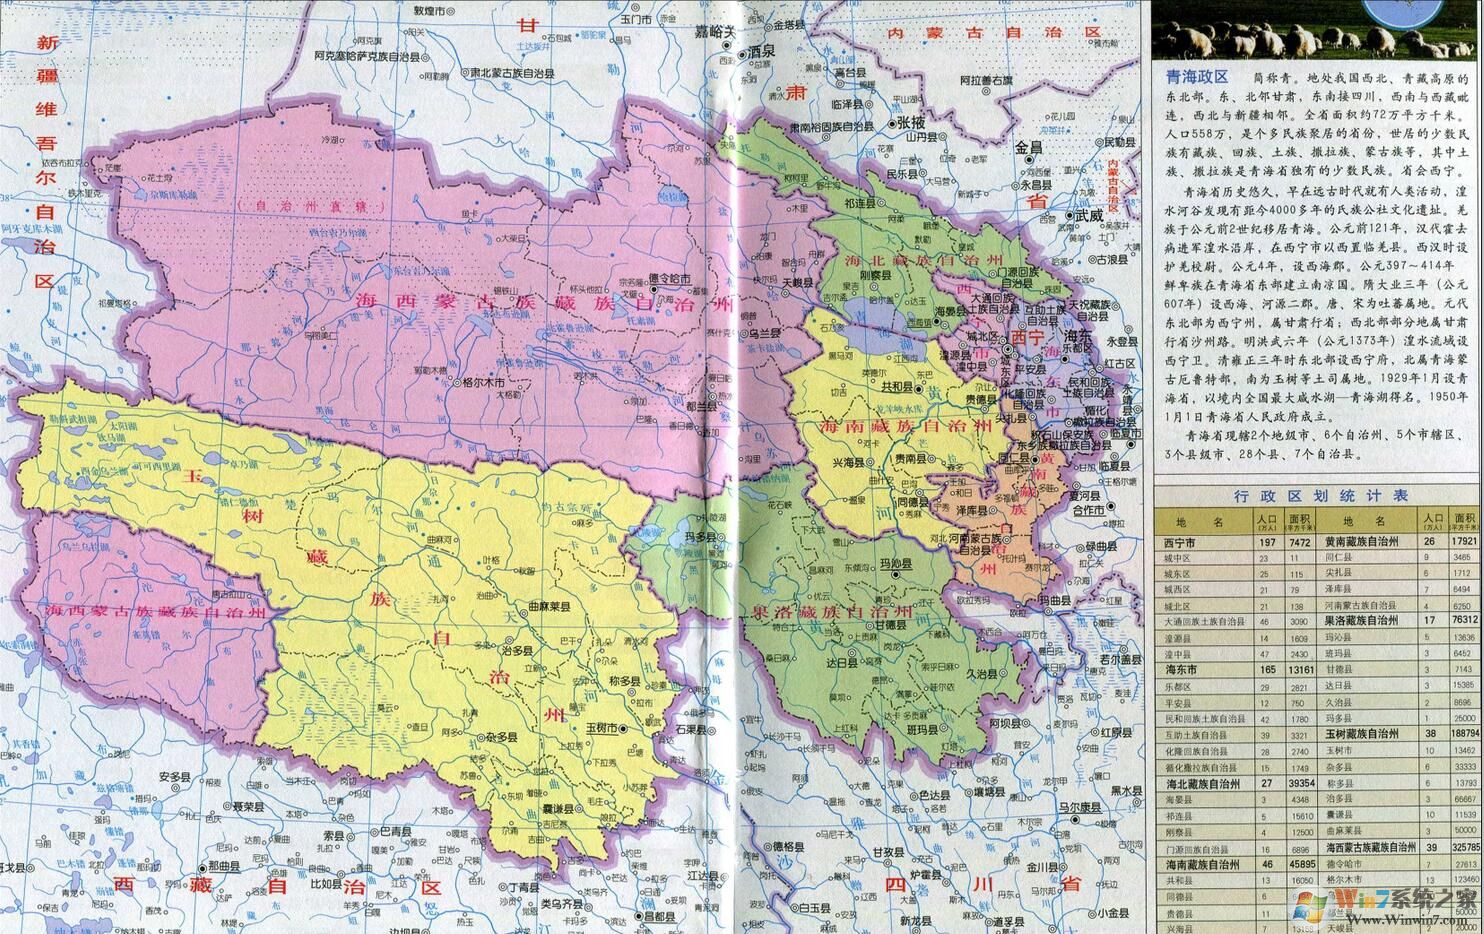 青海地图下载|青海地图高清版大图(含地形图) 2021版